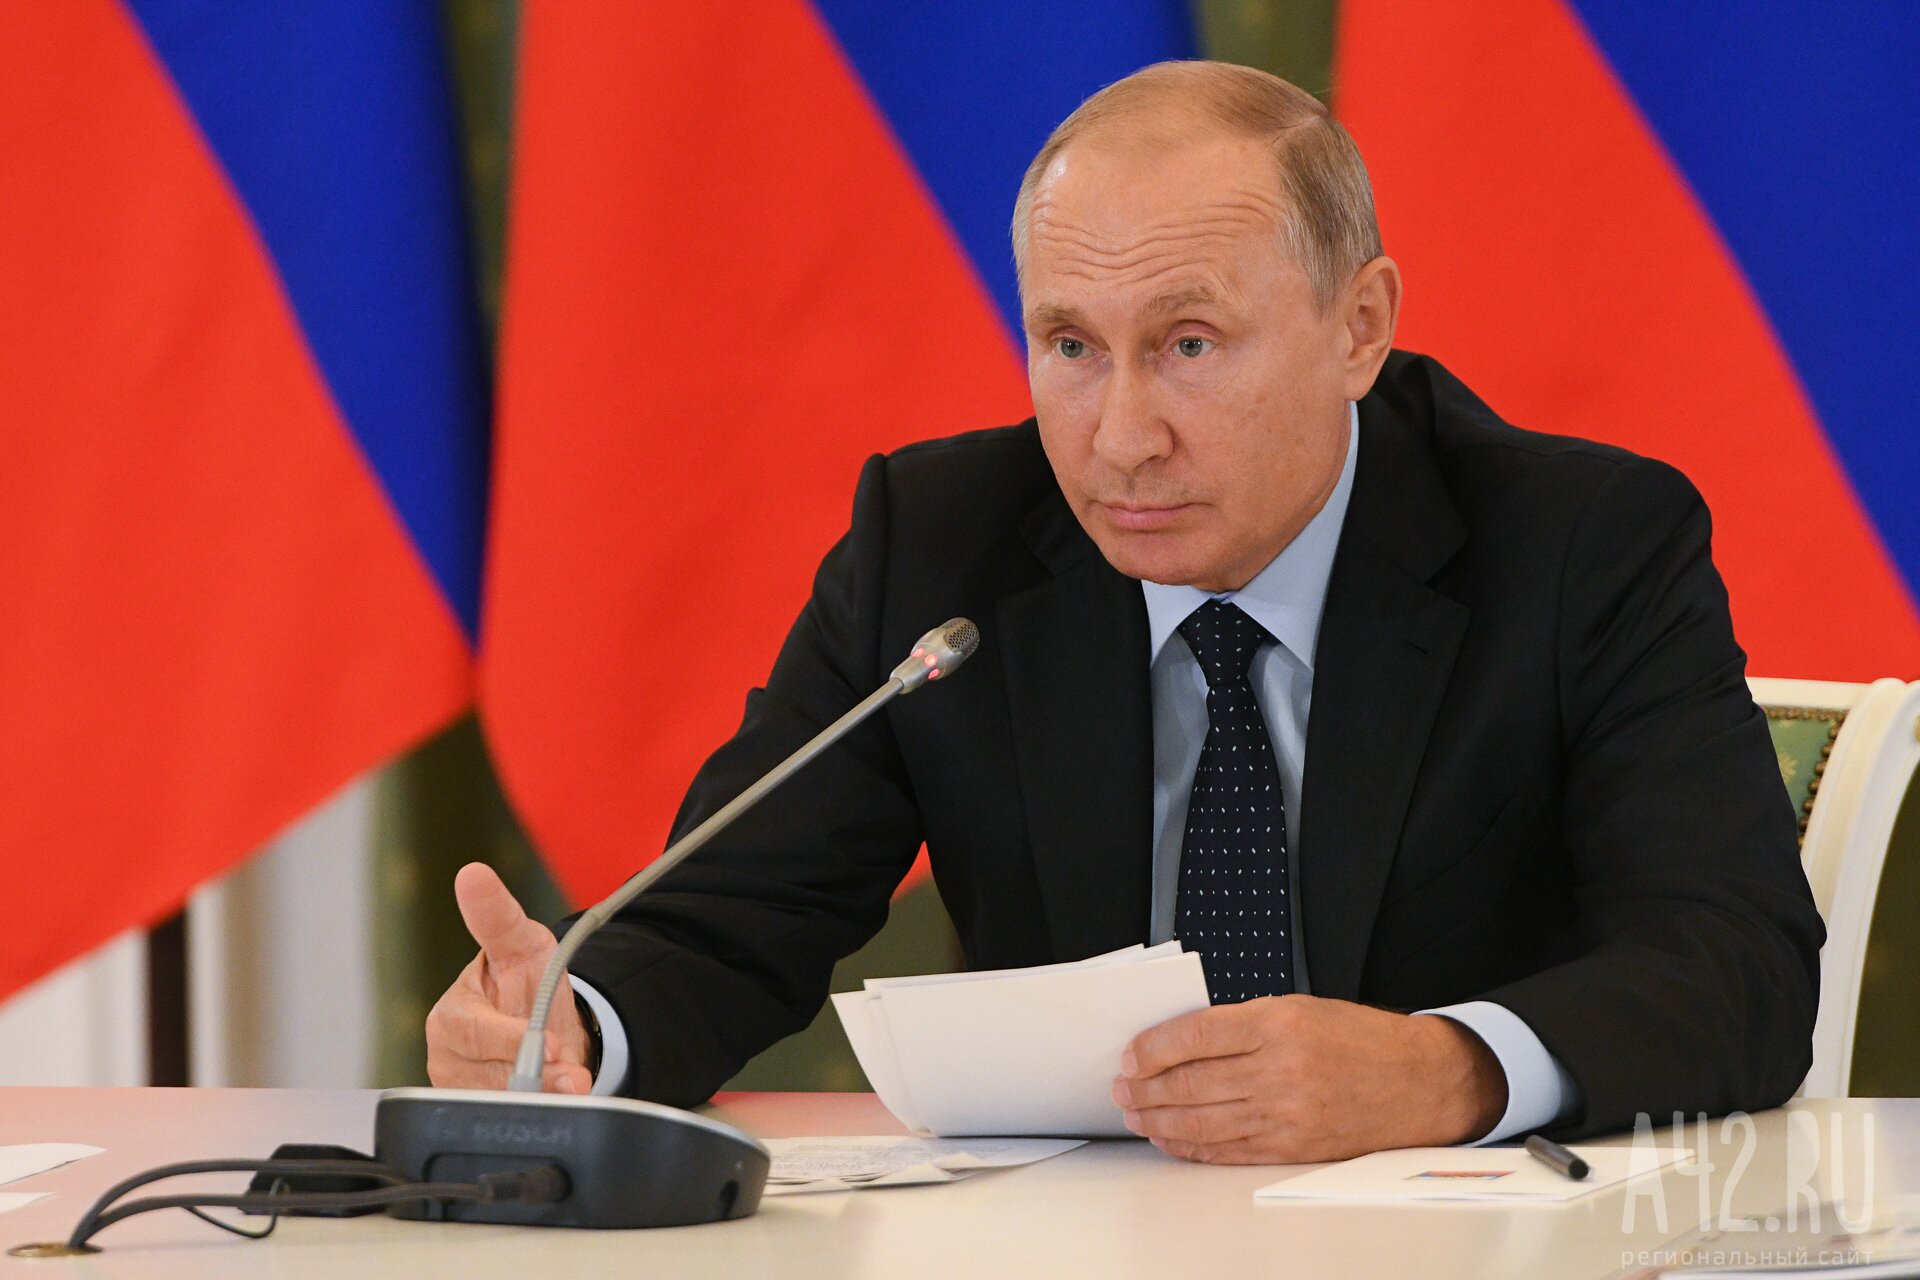 Путин заявил, что скоро примут решения об индексации пенсий, пособий и зарплат бюджетников